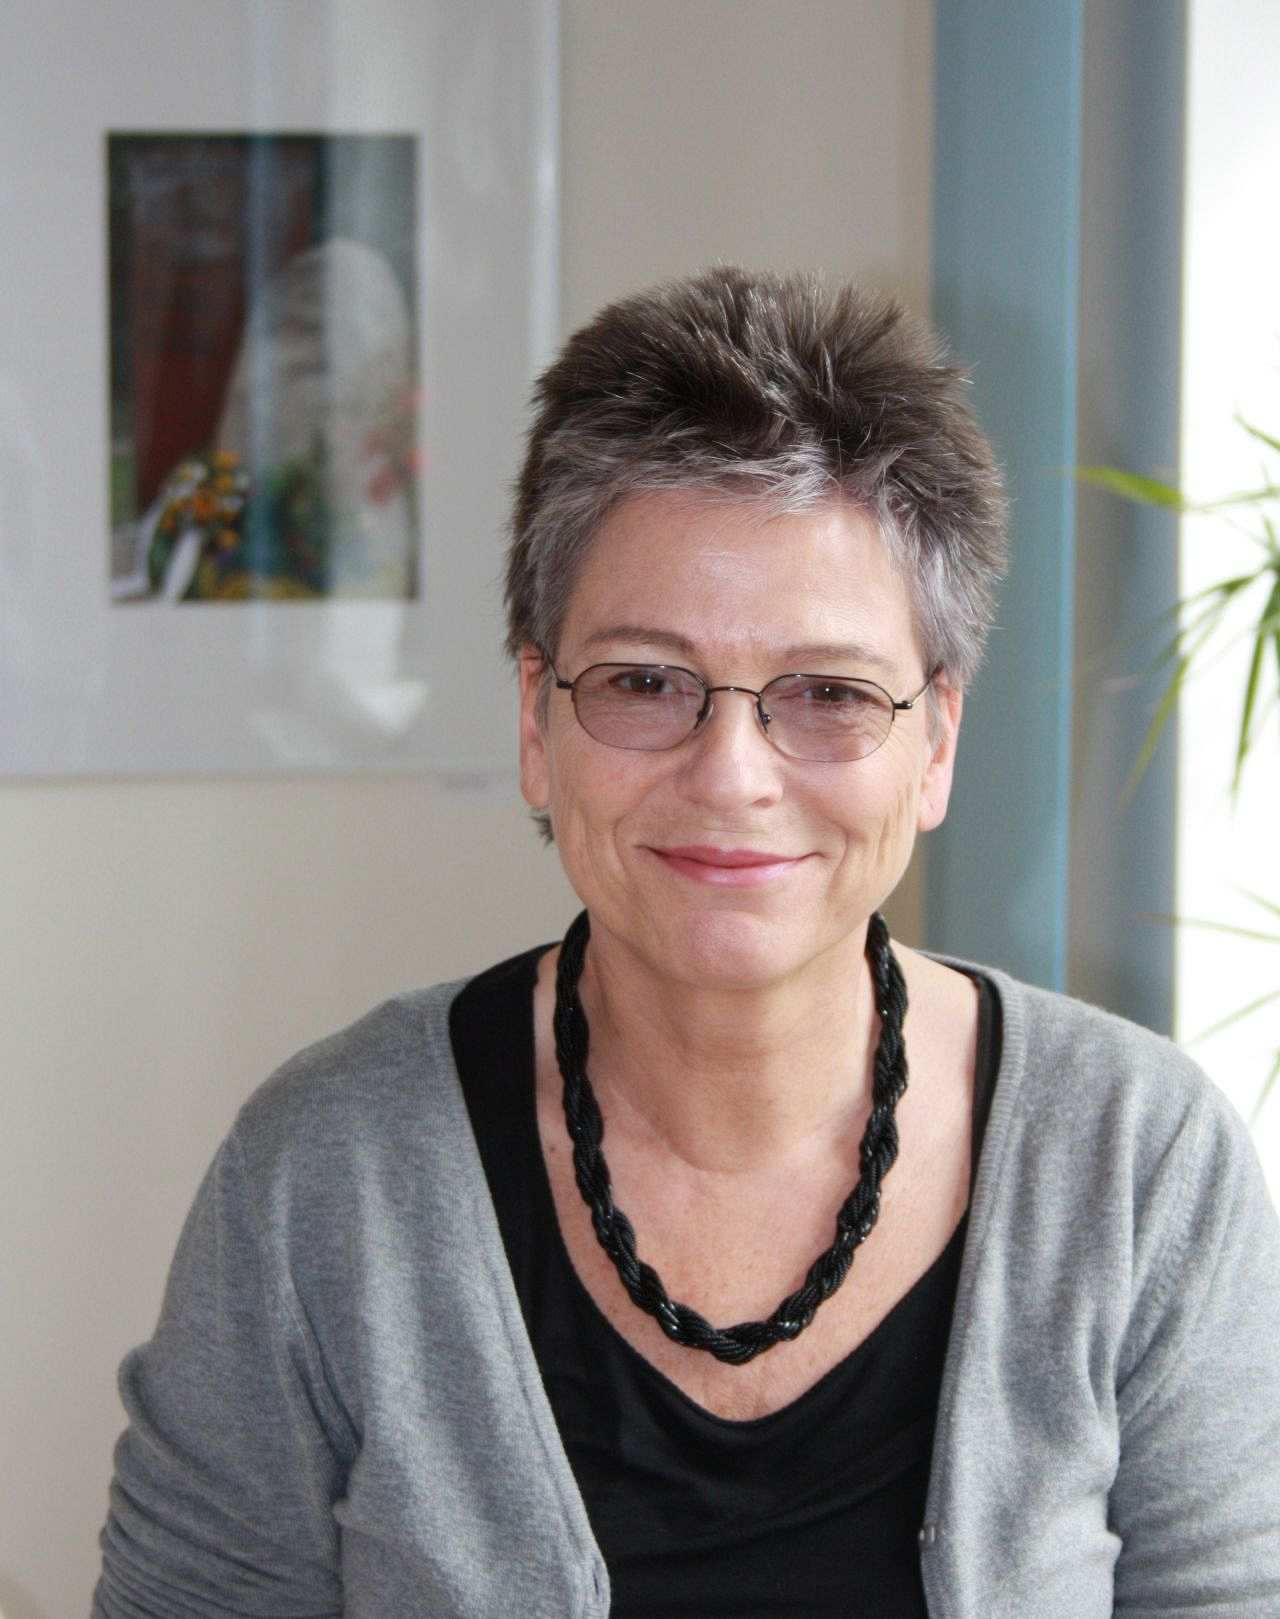 Porträtfotografie der DDR-Bürgerrechtlerin und Politikerin Ulrike Poppe.